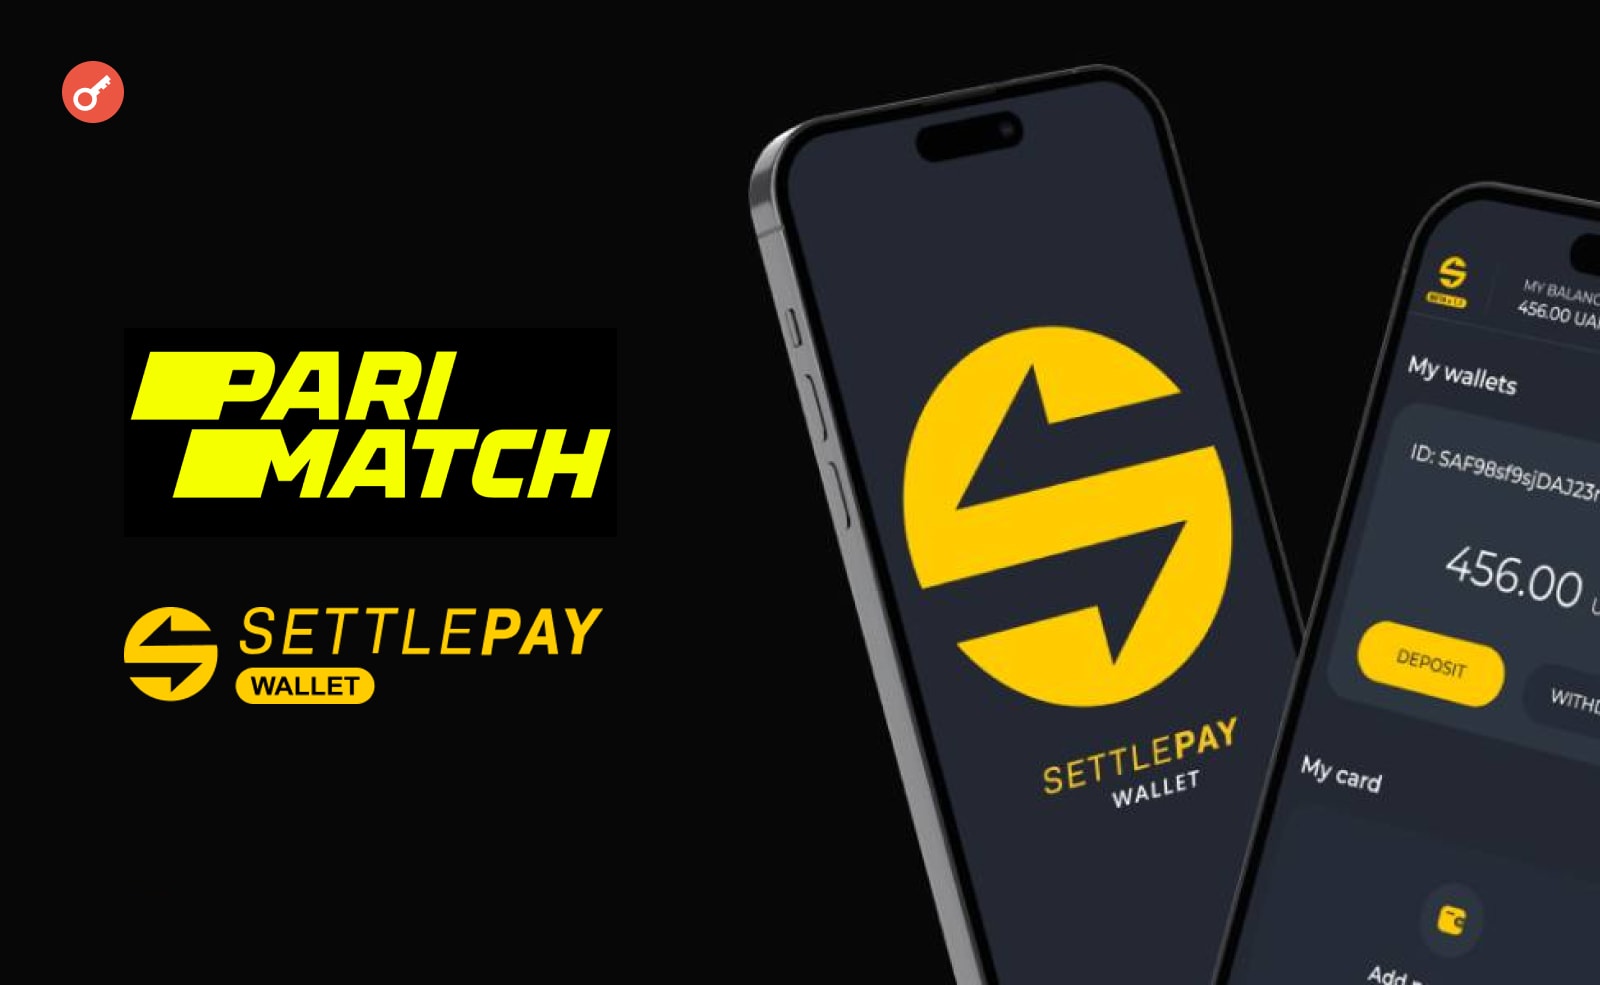 Parimatch додав SettlePay Wallet в якості платіжного сервісу. Головний колаж новини.